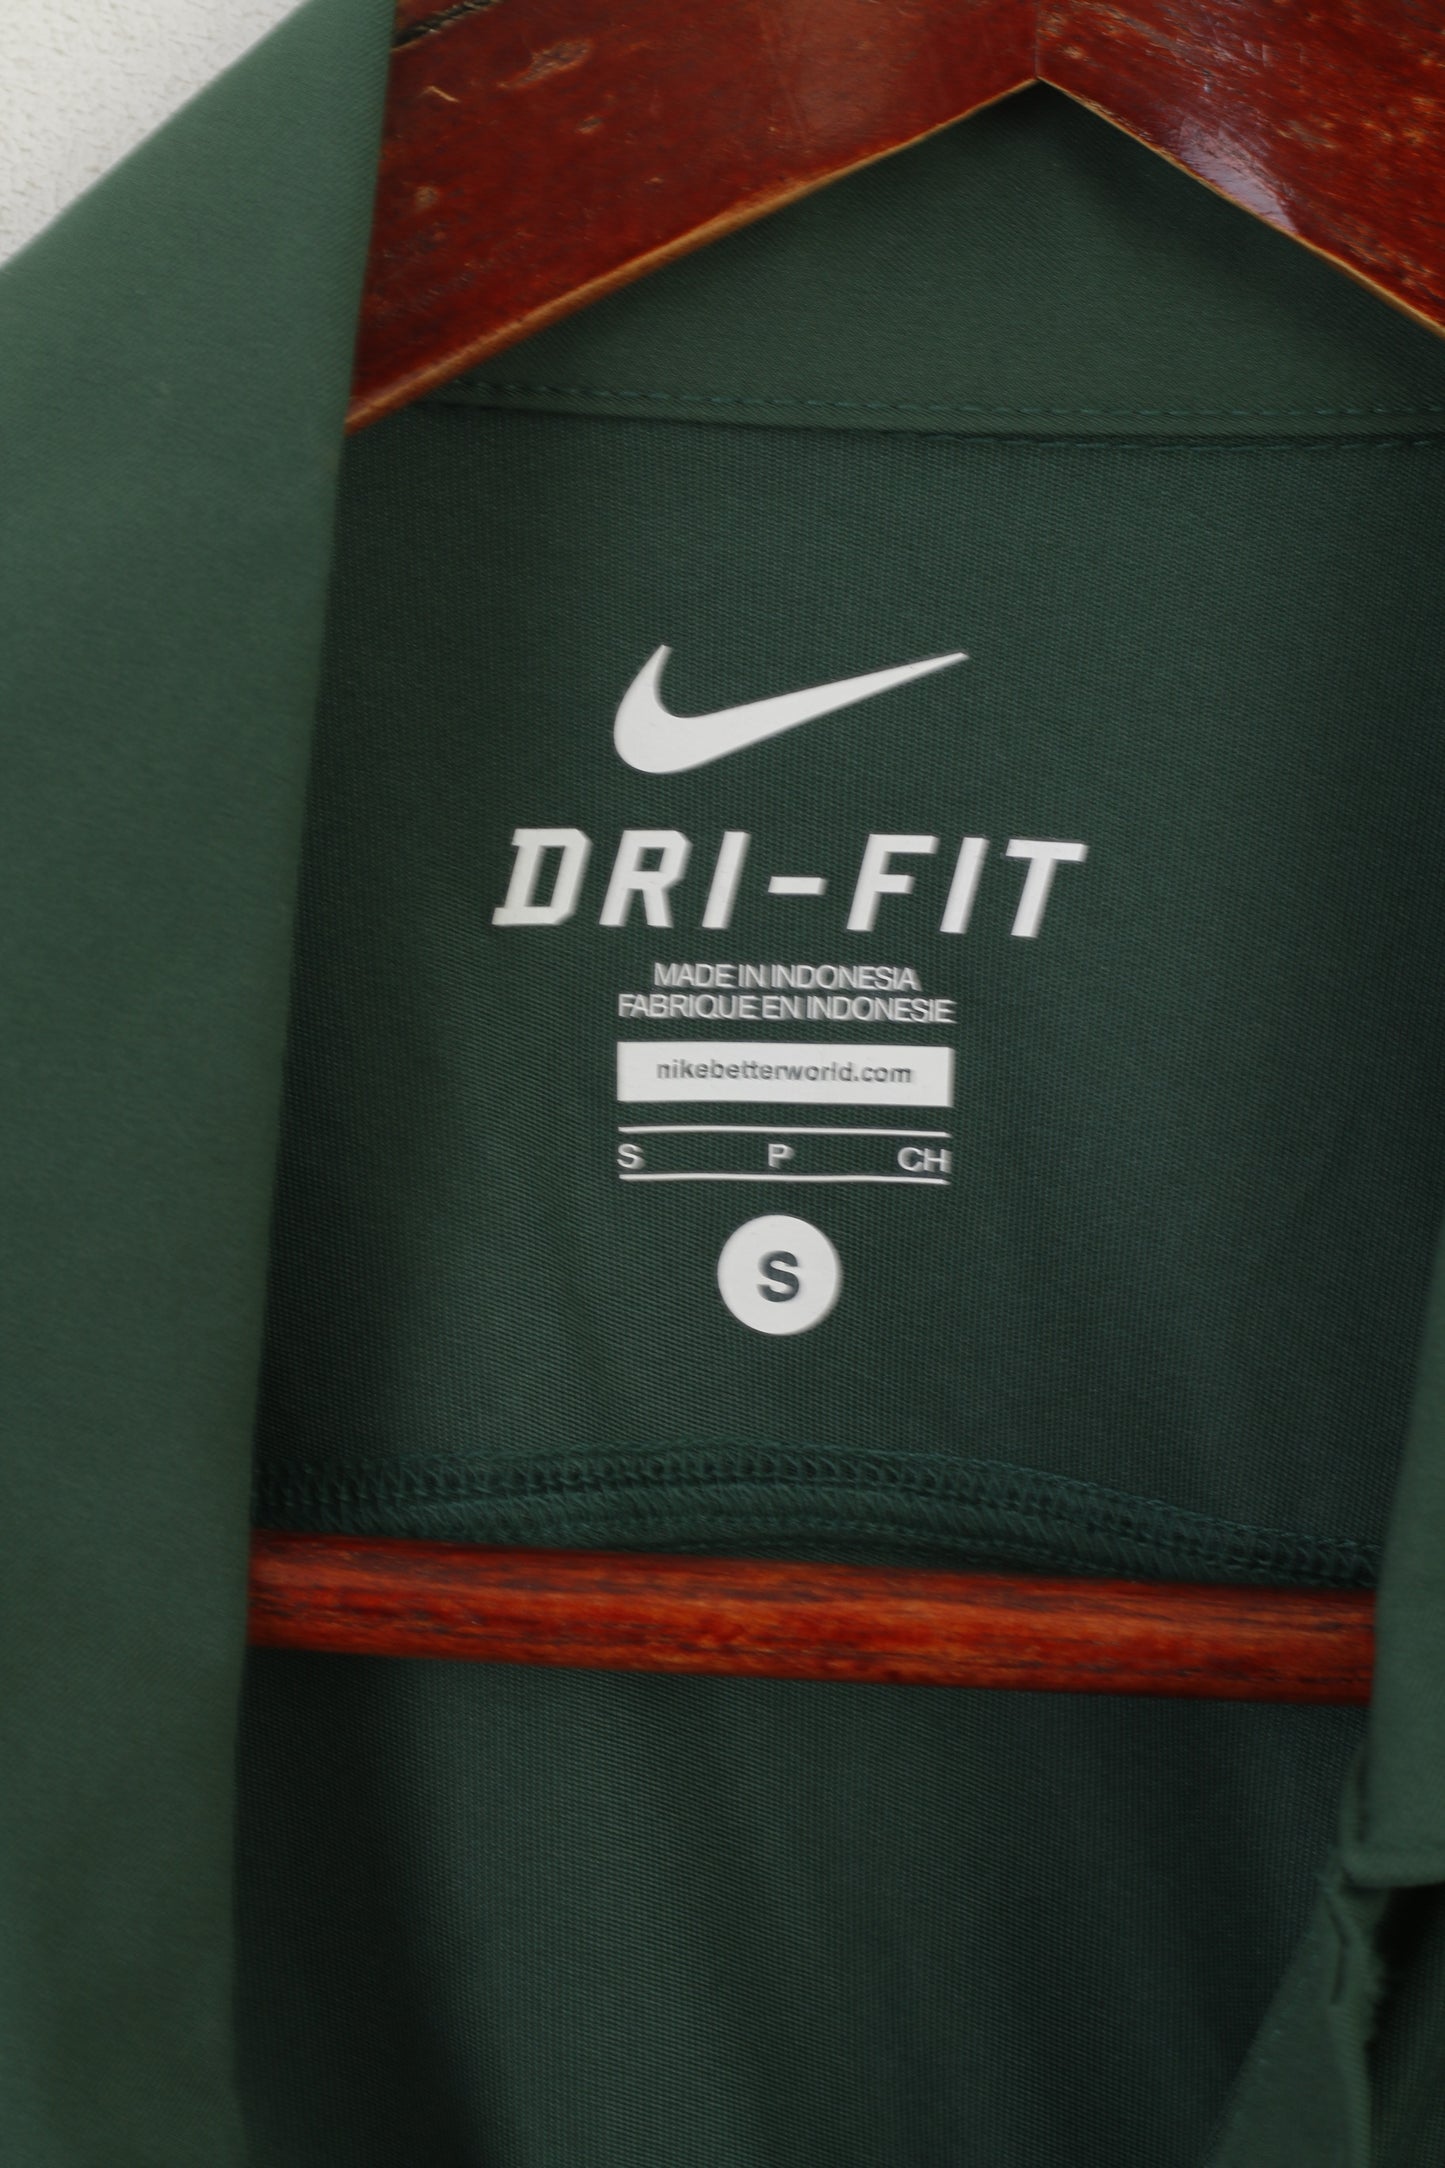 Nike Polo Homme Vert Dri-Fit Sportswear Just Do It Logo Jersey Top